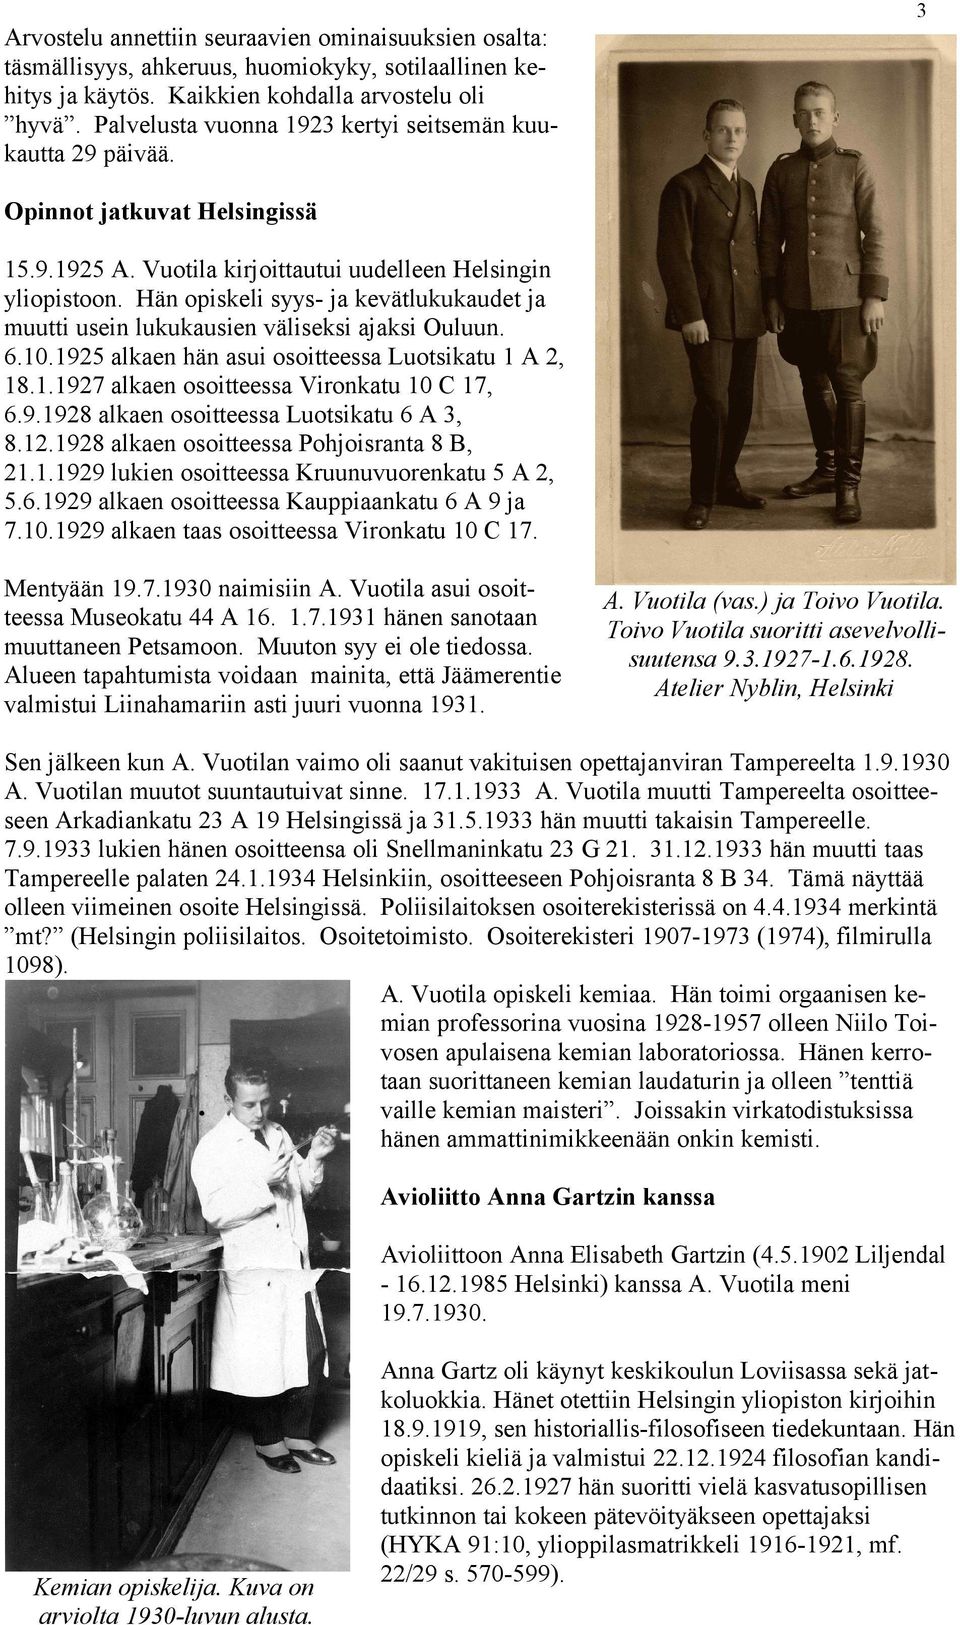 Hän opiskeli syys- ja kevätlukukaudet ja muutti usein lukukausien väliseksi ajaksi Ouluun. 6.10.1925 alkaen hän asui osoitteessa Luotsikatu 1 A 2, 18.1.1927 alkaen osoitteessa Vironkatu 10 C 17, 6.9.1928 alkaen osoitteessa Luotsikatu 6 A 3, 8.